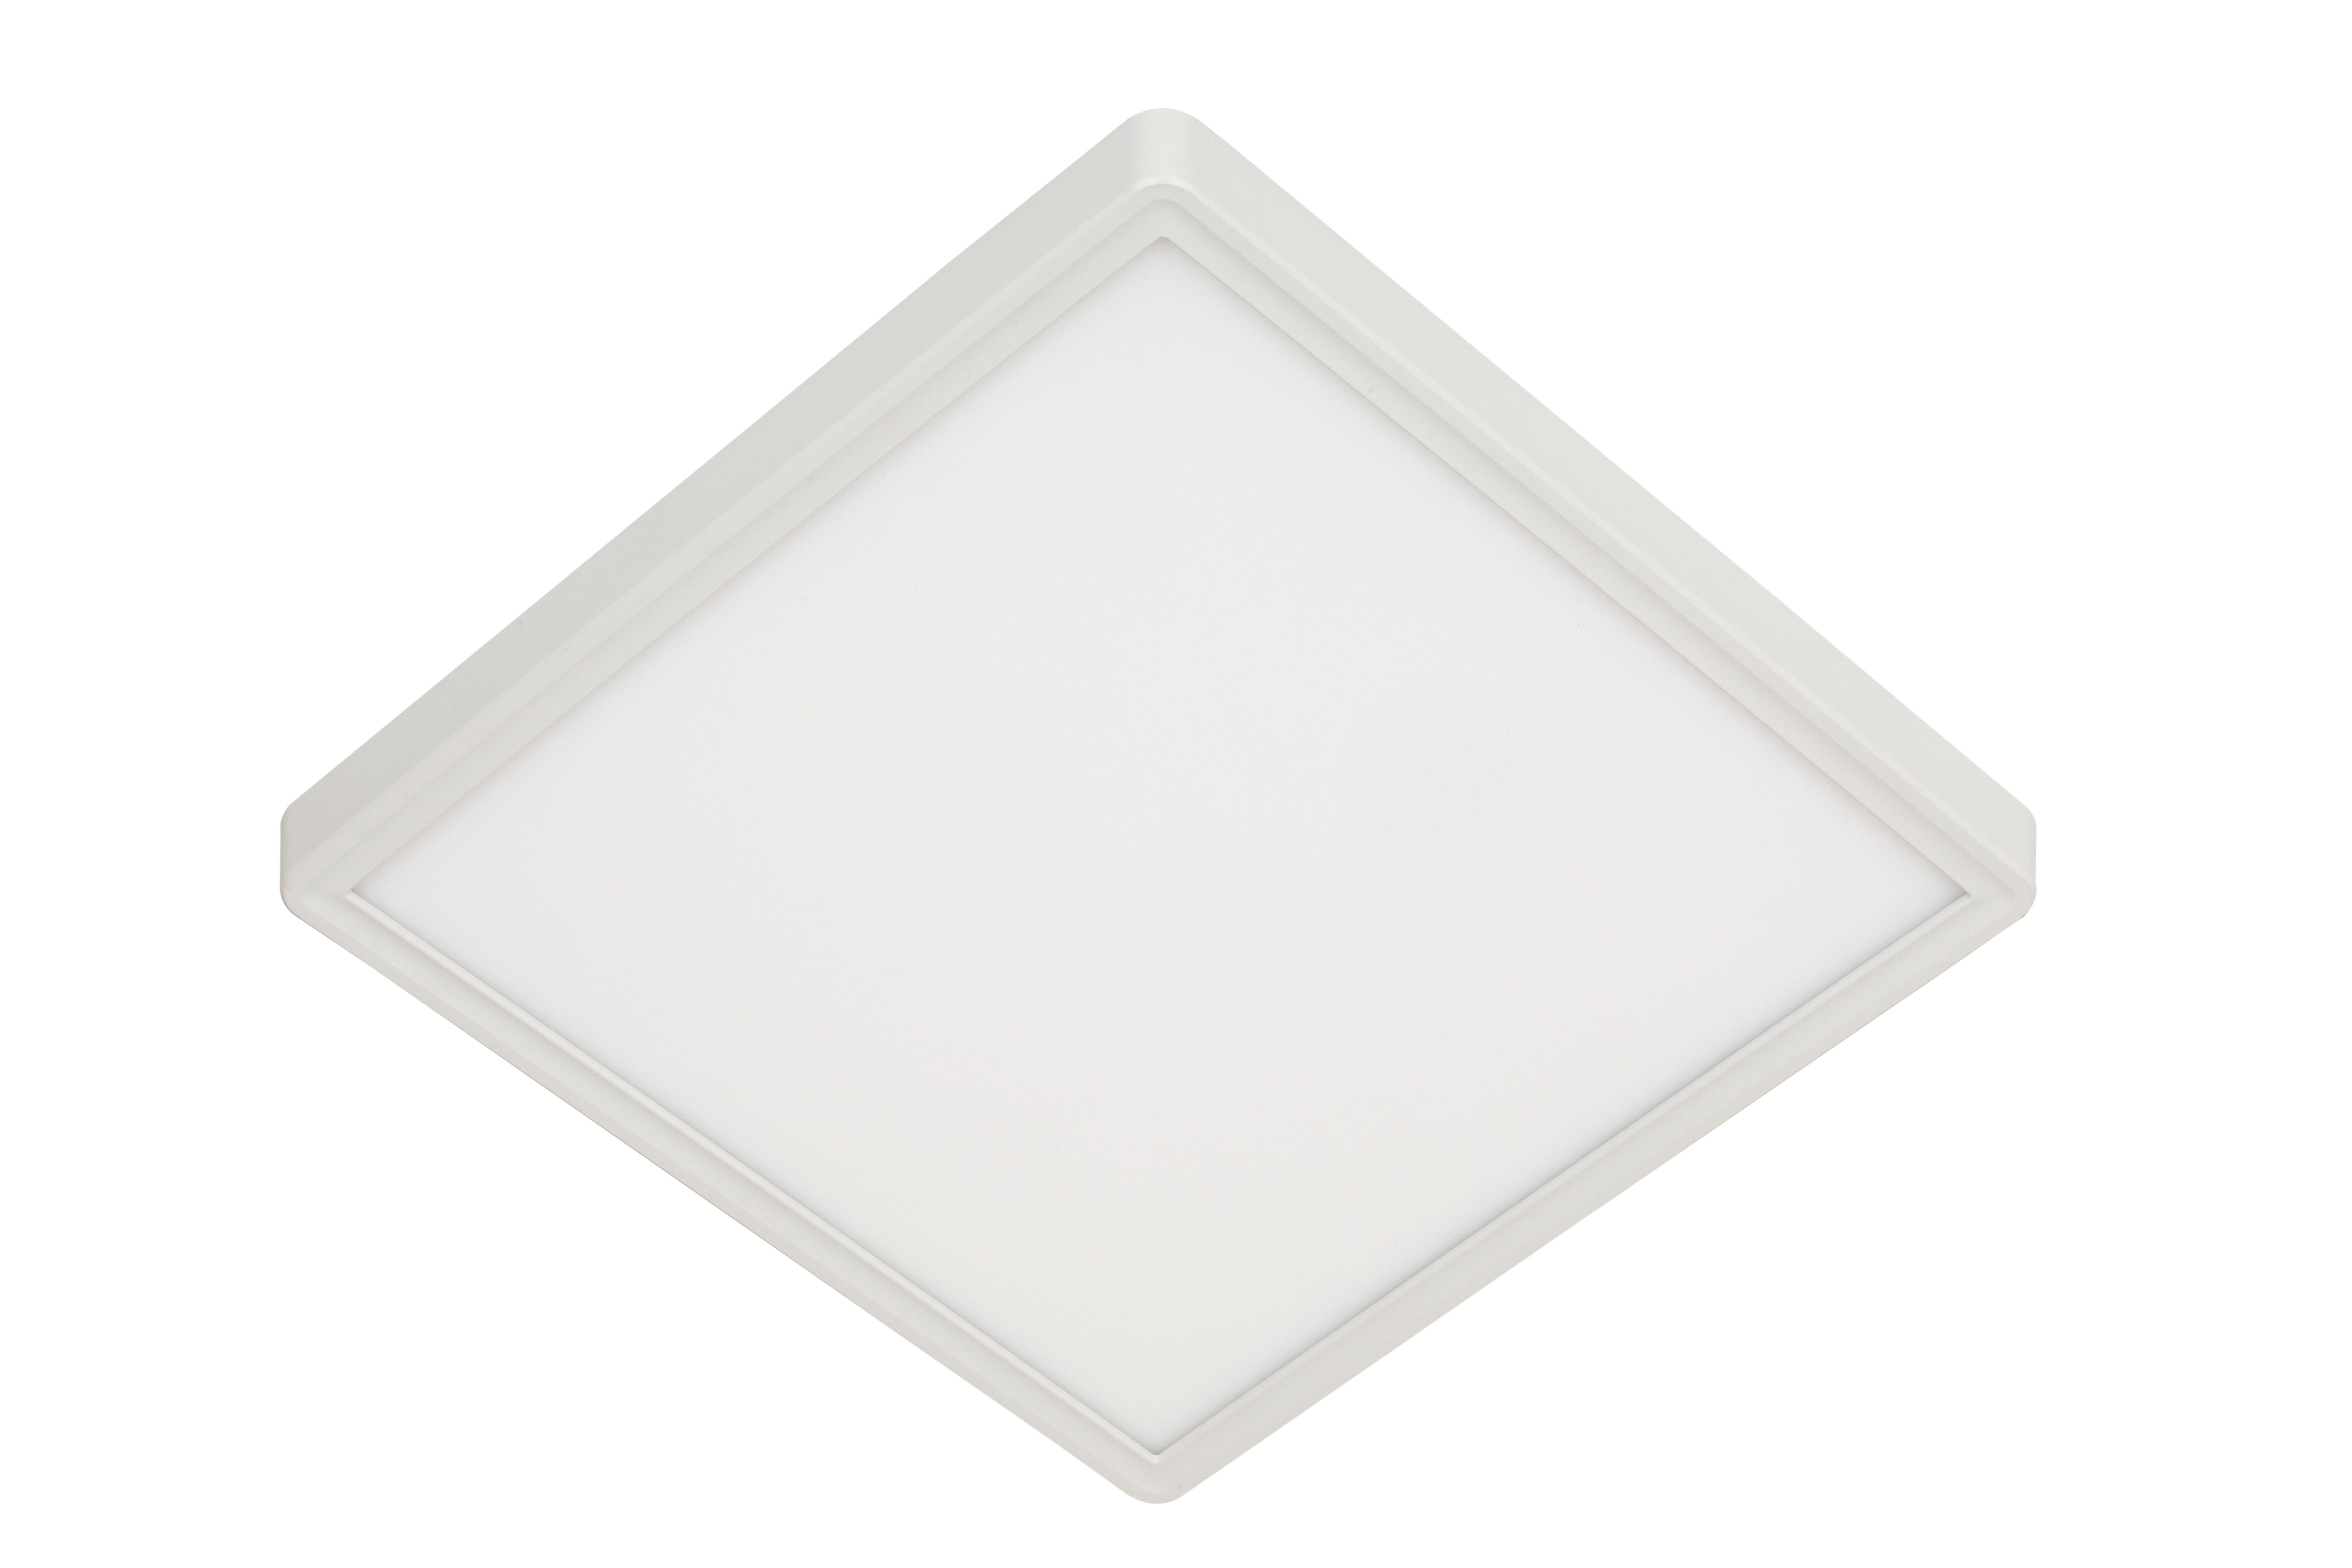 LED-DECKENLEUCHTE 30/30/10 cm   - Weiß, Basics, Kunststoff (30/30/10cm) - Novel